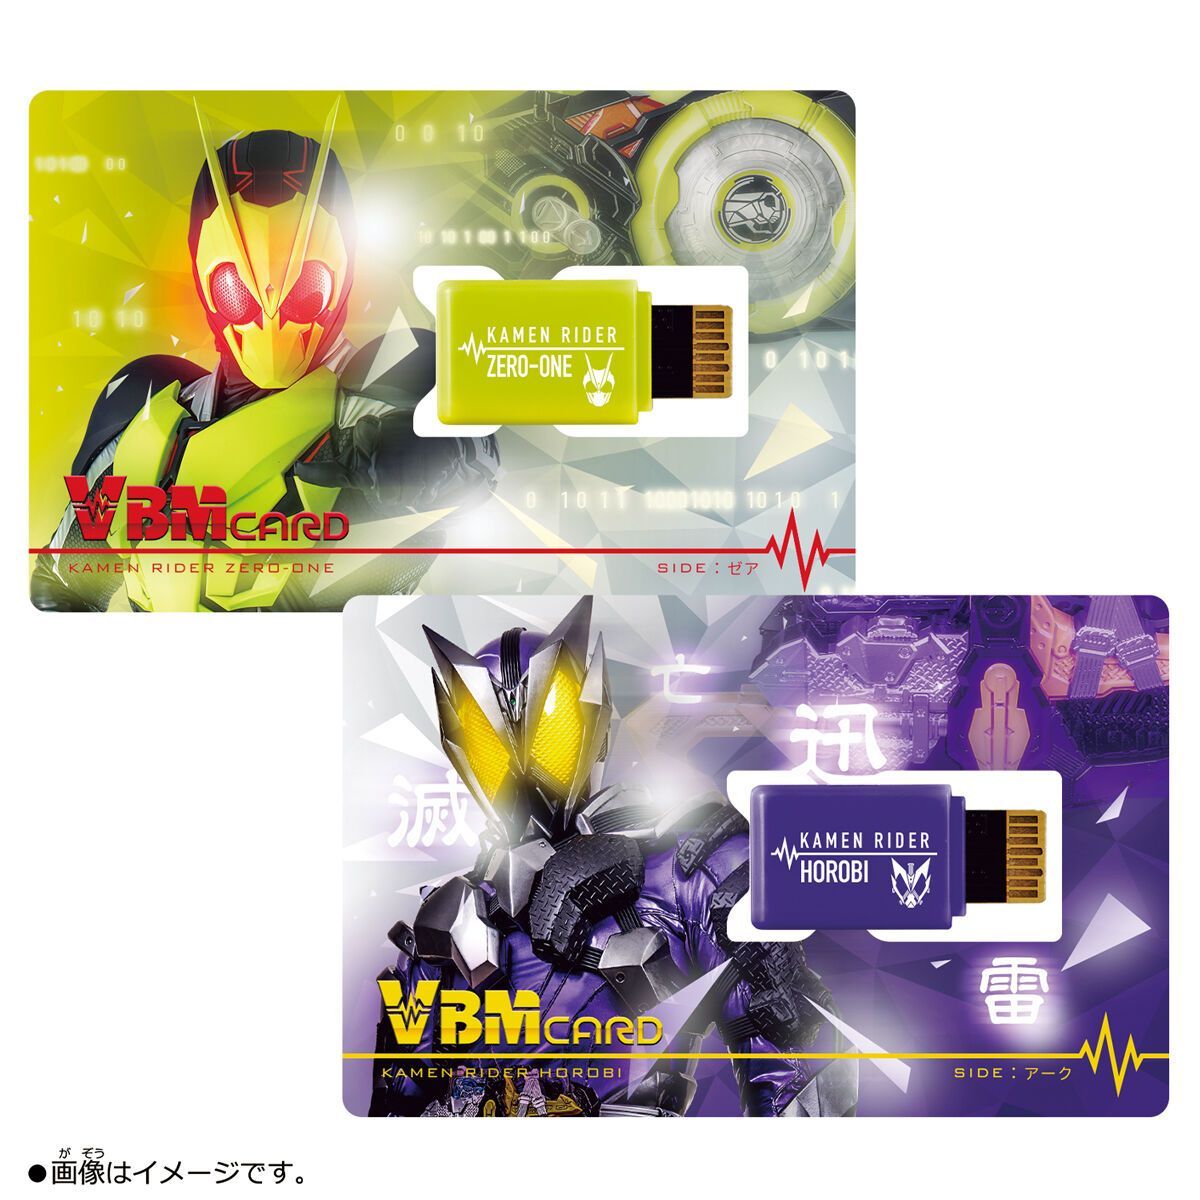 Kamen Rider 50th Anniversary [Vital Bracelet Characters Showa 10 Masked Riders PBandai / Kuuga / VBM Card Set Vol 1]-Dim Card Vol 1-Bandai-Ace Cards &amp; Collectibles